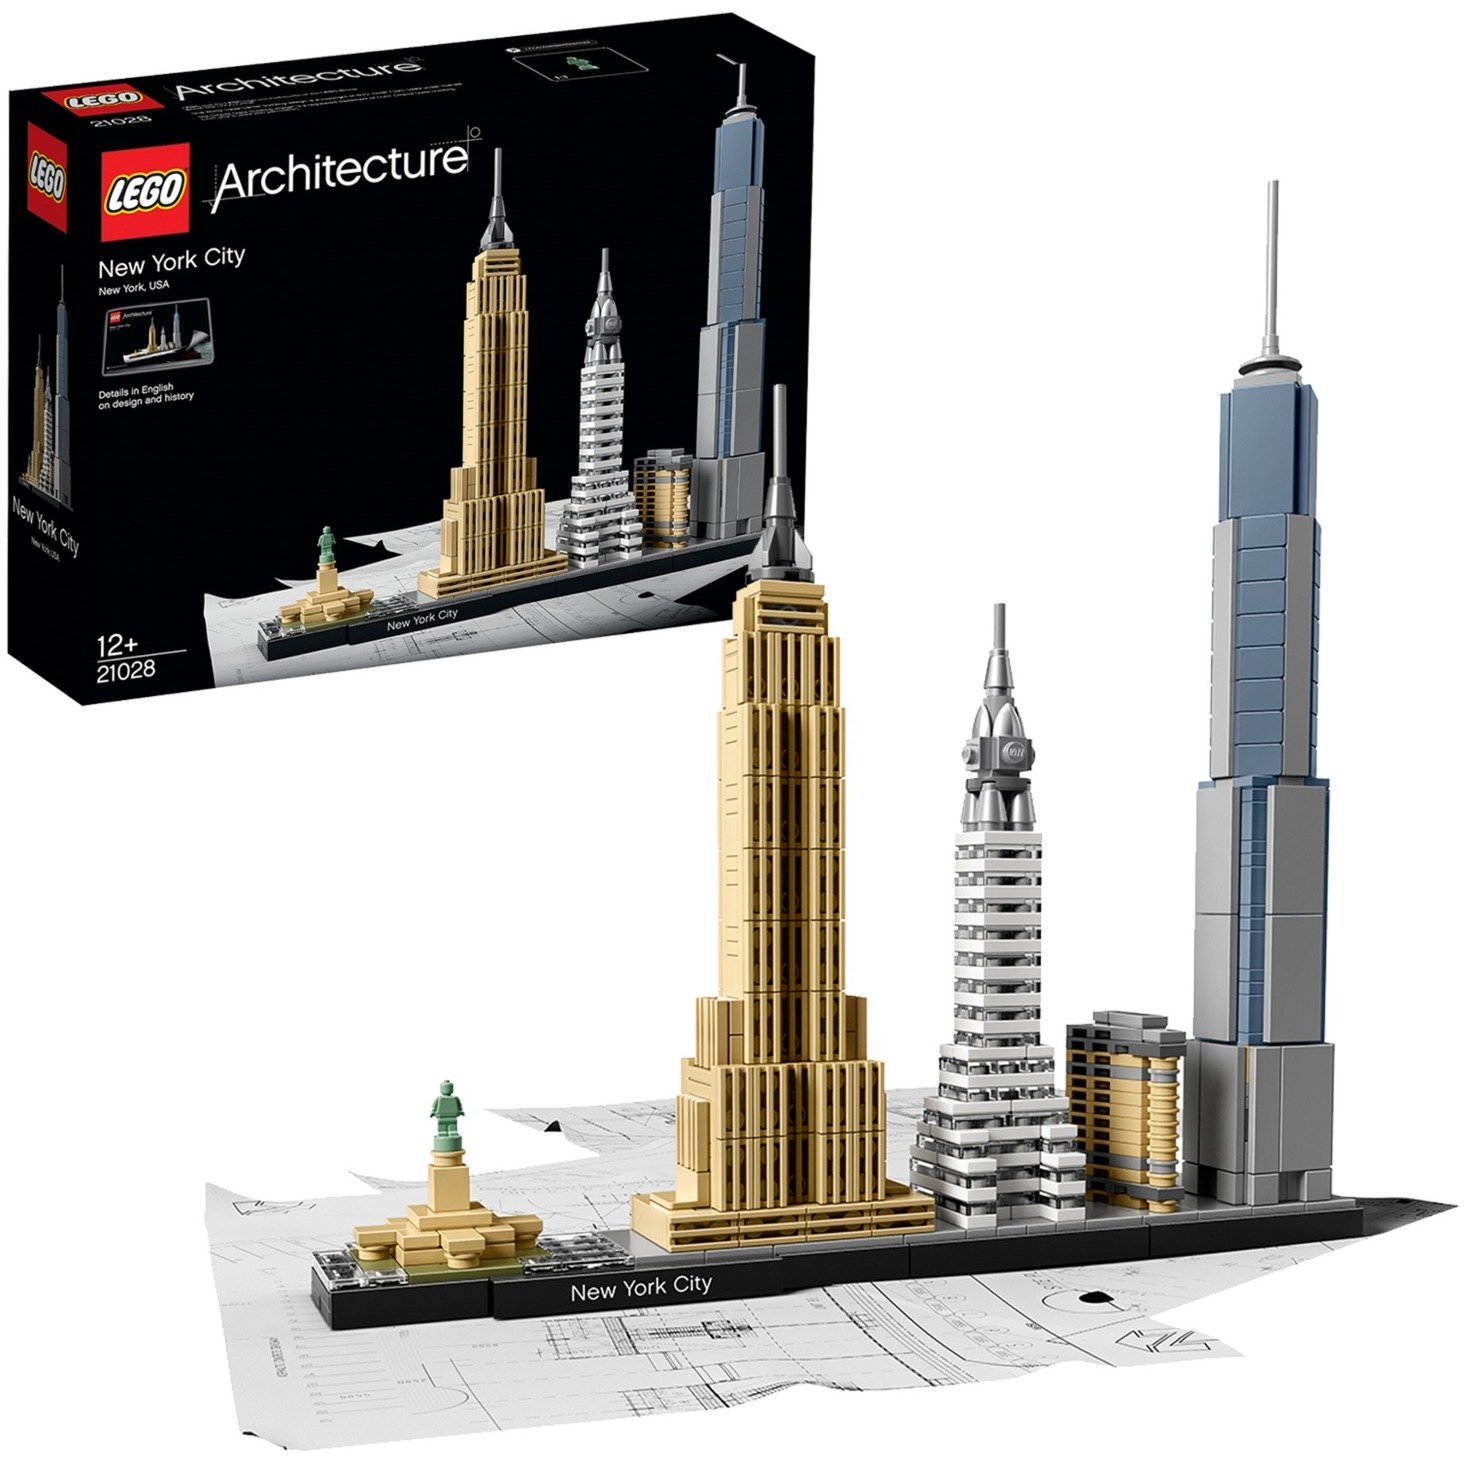 21028 Architecture New York City, Konstruktionsspielzeug von Lego